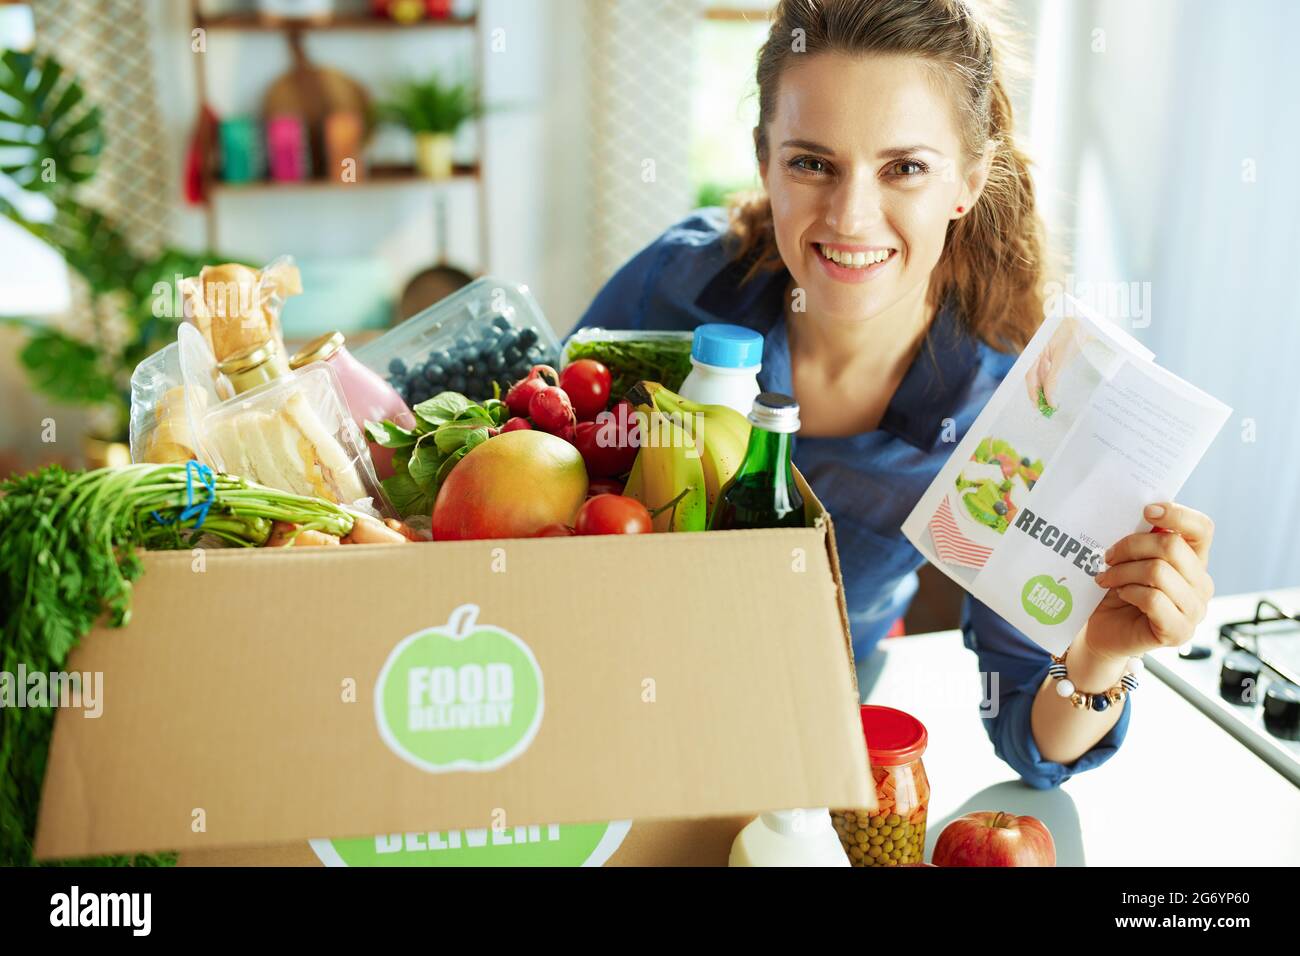 Lieferung von Lebensmitteln. Glückliche moderne Frau mit Lebensmittel-Box und Rezepte-Liste in der Küche. Stockfoto